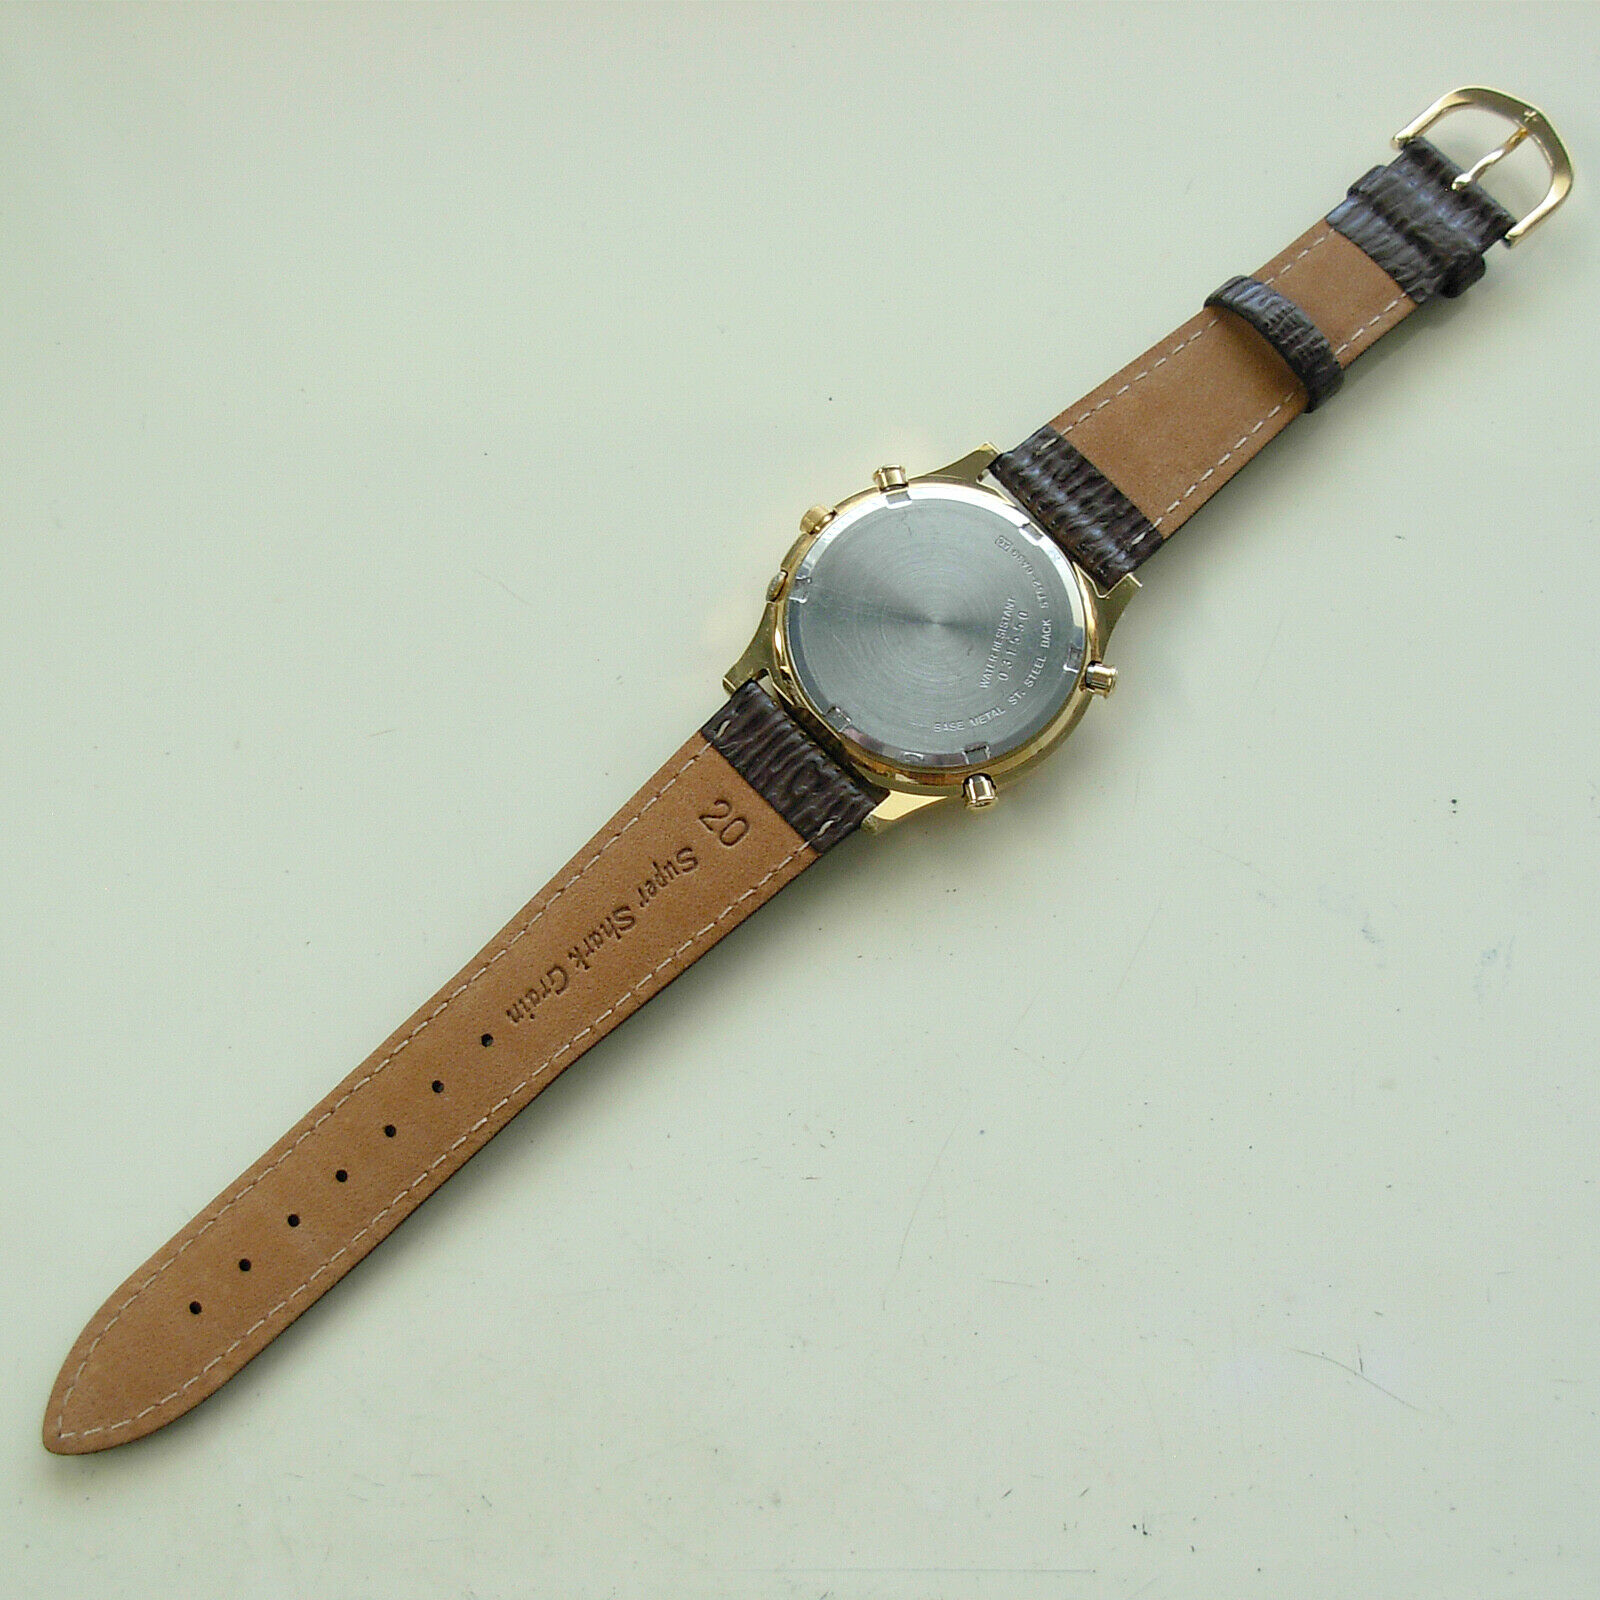 Vintage 1990 Seiko World Timer GMT Alarm Men's Quartz Watch - 5T52-6A39 |  WatchCharts